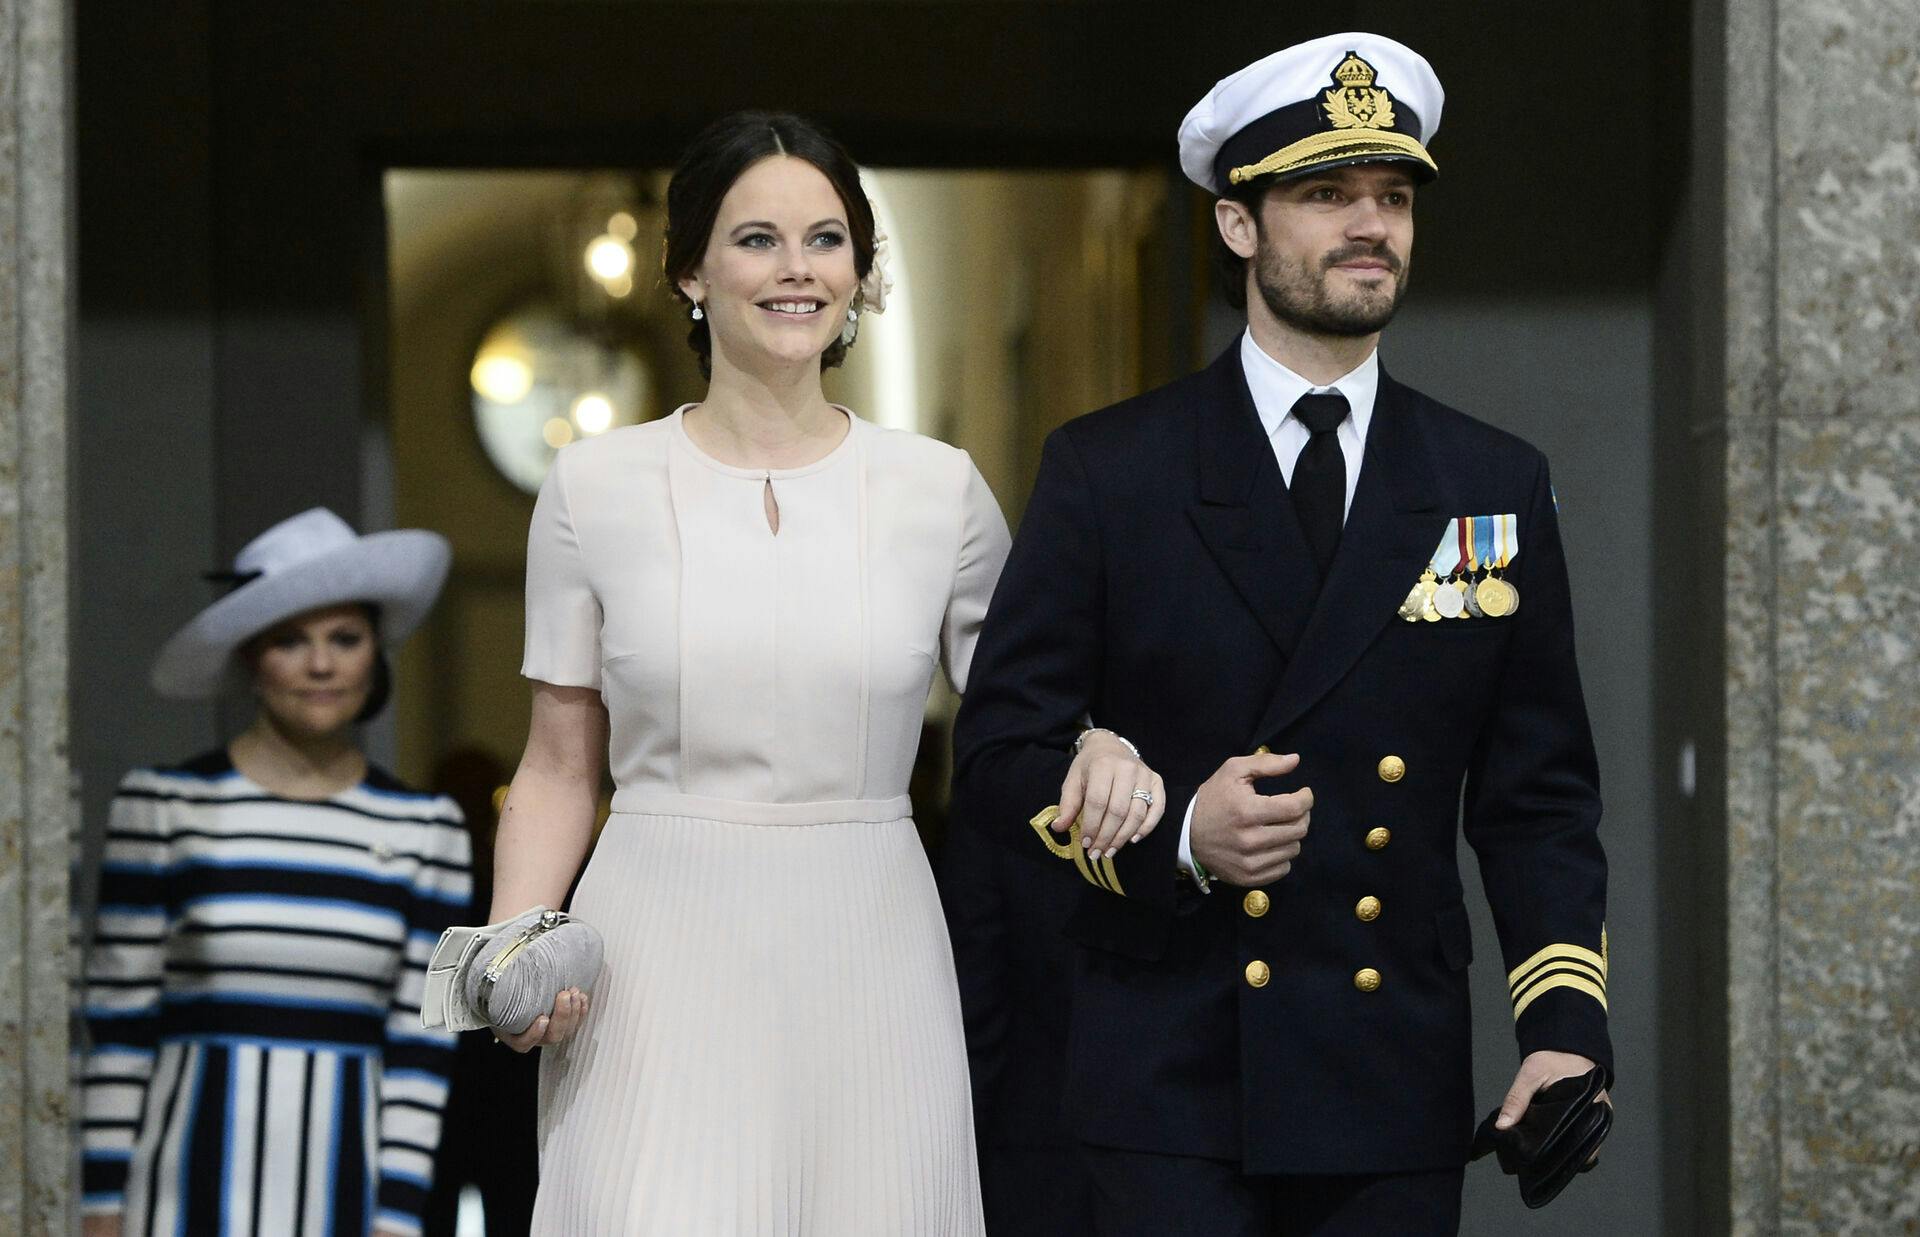 Prinsesse Sofia og prins Carl Philip blev gift i 2015.